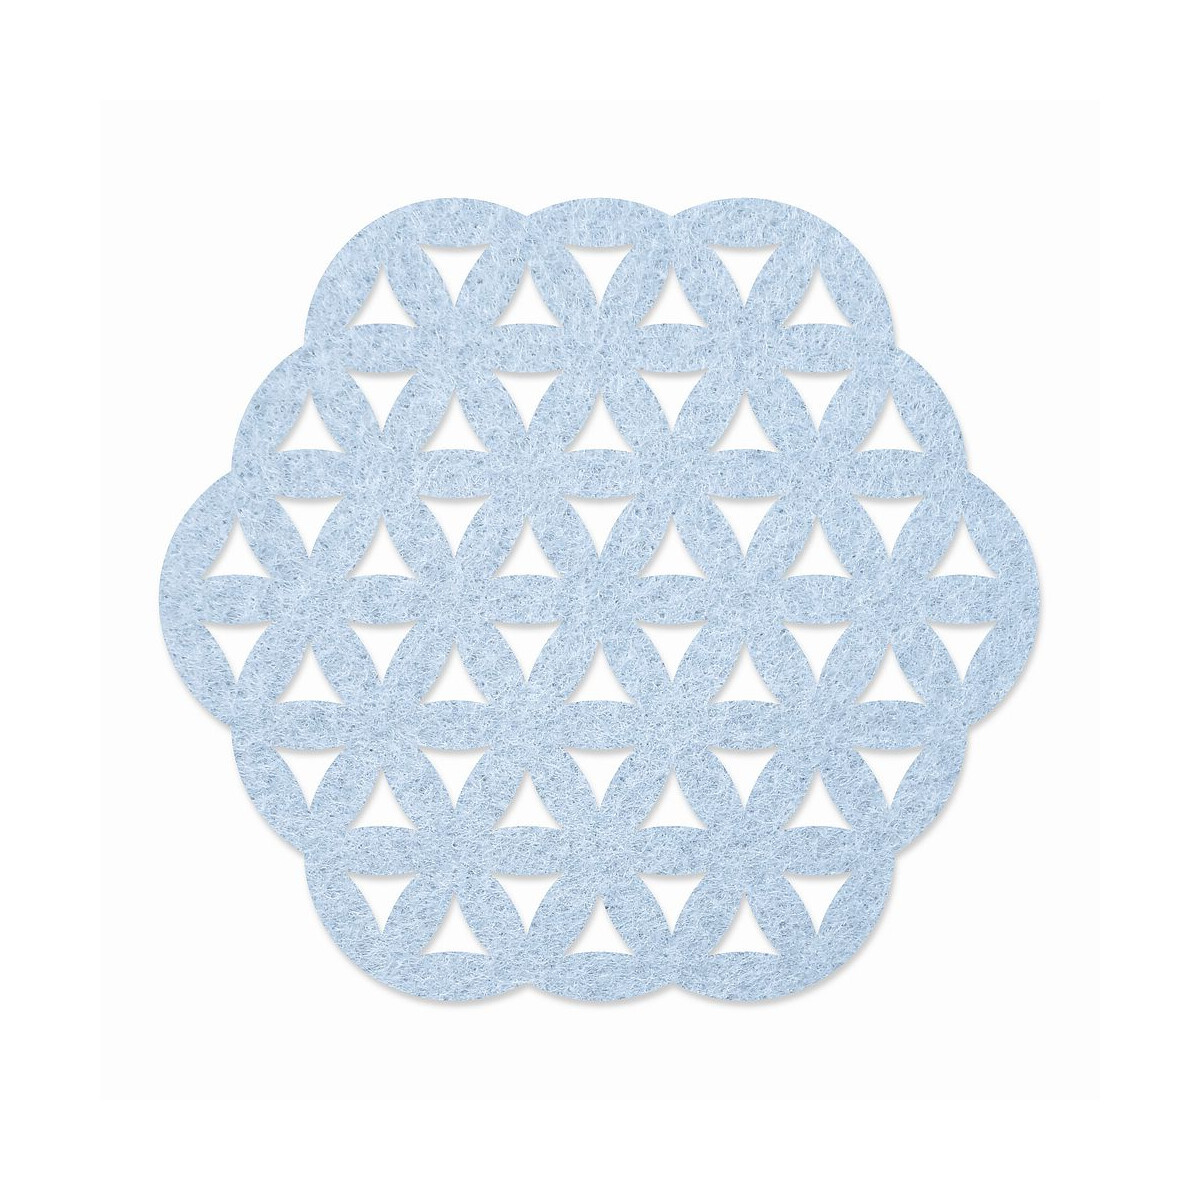 1 x FILZ Untersetzer Sechseck mit Muster 15 cm - babyblau